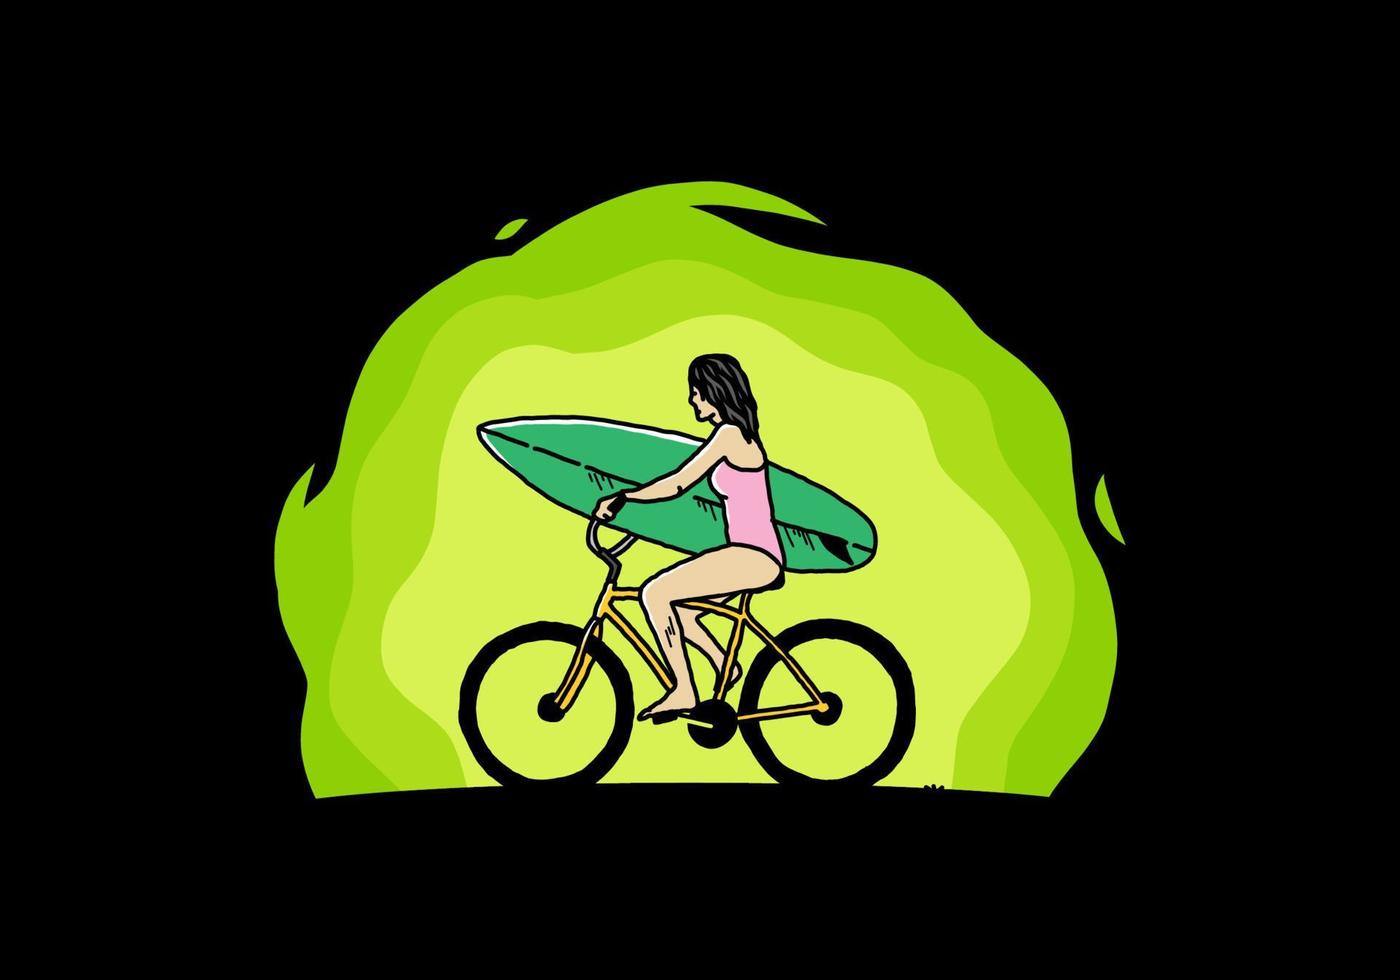 illustration d'une femme faisant du surf à vélo vecteur